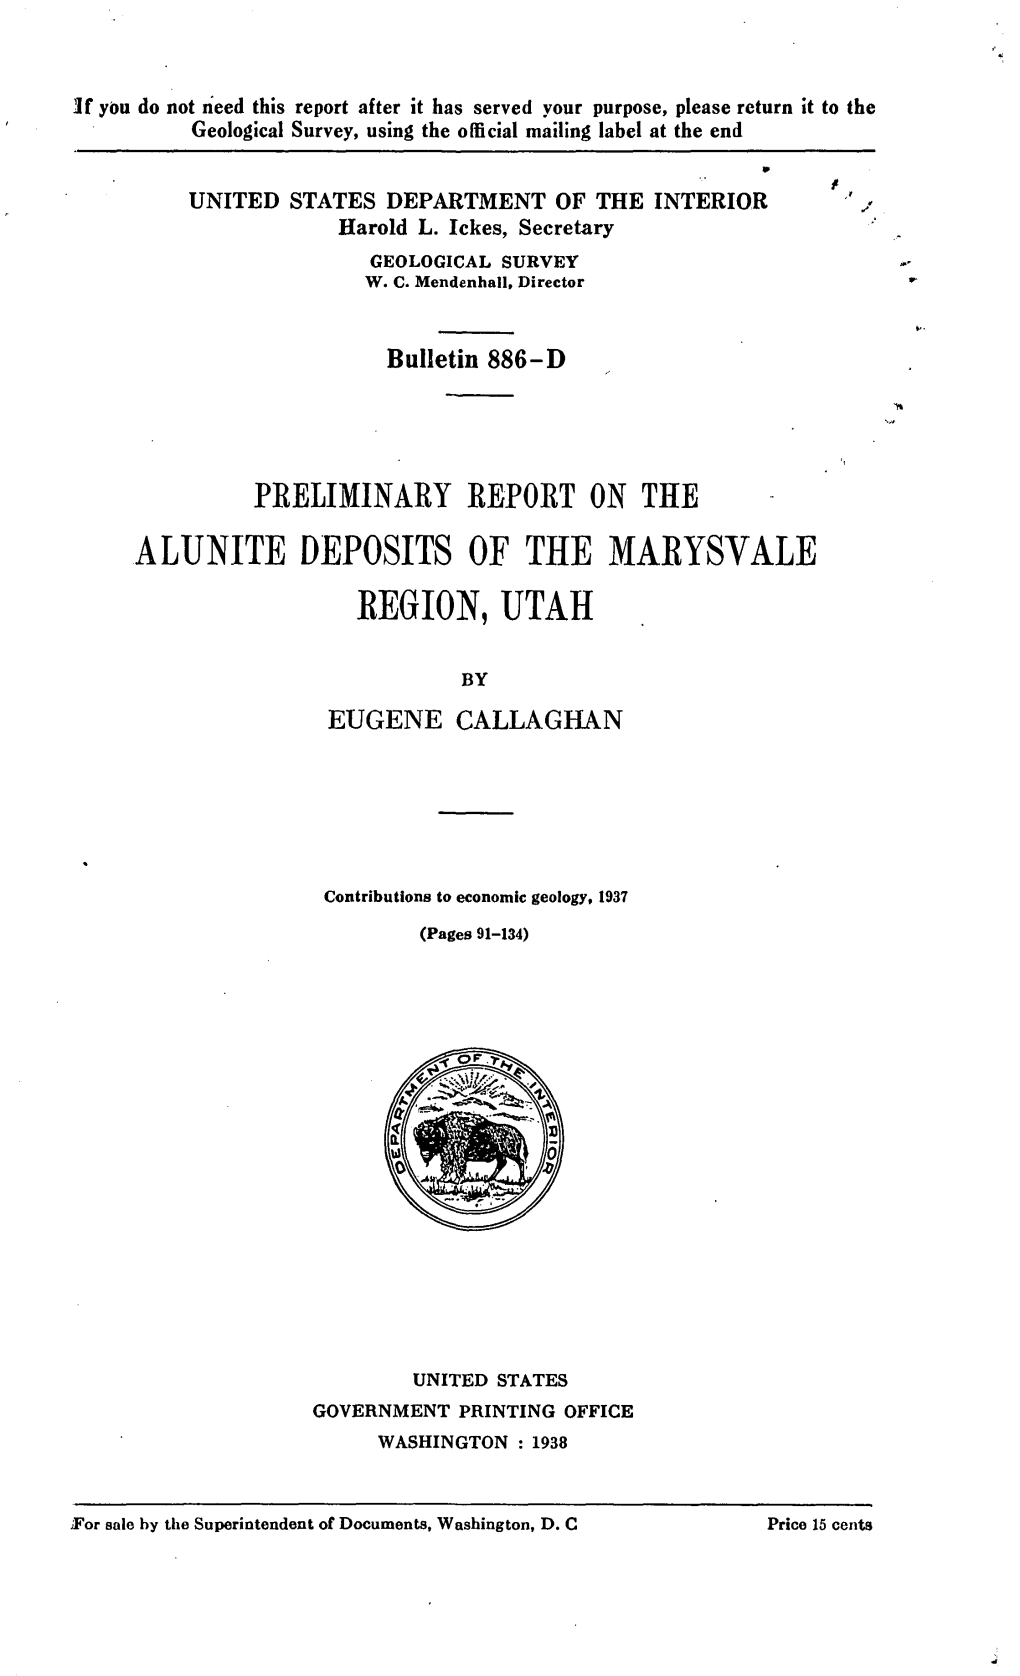 Alunite Deposits of the Maeysvale Eegion, Utah